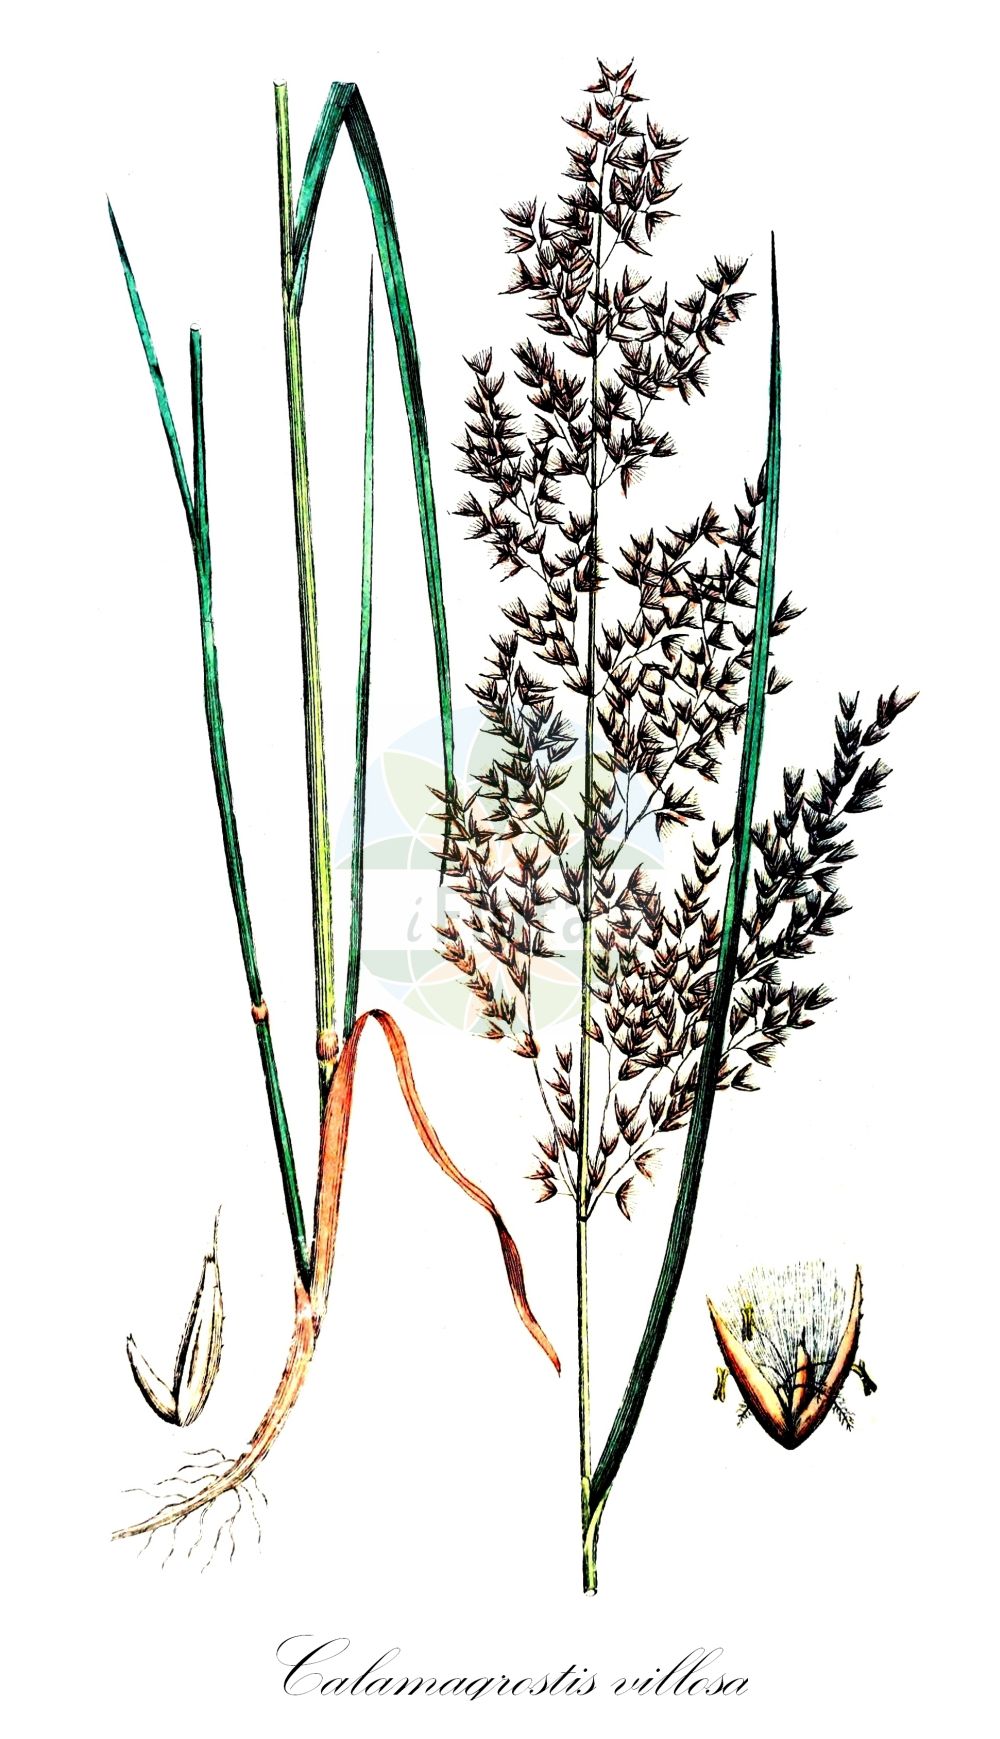 Historische Abbildung von Calamagrostis villosa (Wolliges Reitgras - Hairy Small-reed). Das Bild zeigt Blatt, Bluete, Frucht und Same. ---- Historical Drawing of Calamagrostis villosa (Wolliges Reitgras - Hairy Small-reed). The image is showing leaf, flower, fruit and seed.(Calamagrostis villosa,Wolliges Reitgras,Hairy Small-reed,Agrostis villosa,Calamagrostis hallerana,Calamagrostis villosa,Wolliges Reitgras,Woll-Reitgras,Hairy Small-reed,Calamagrostis,Reitgras,Reedgrass,Poaceae,Süßgräser,Grass family,Blatt,Bluete,Frucht,Same,leaf,flower,fruit,seed,Svensk Botanik (Svensk Botanik))